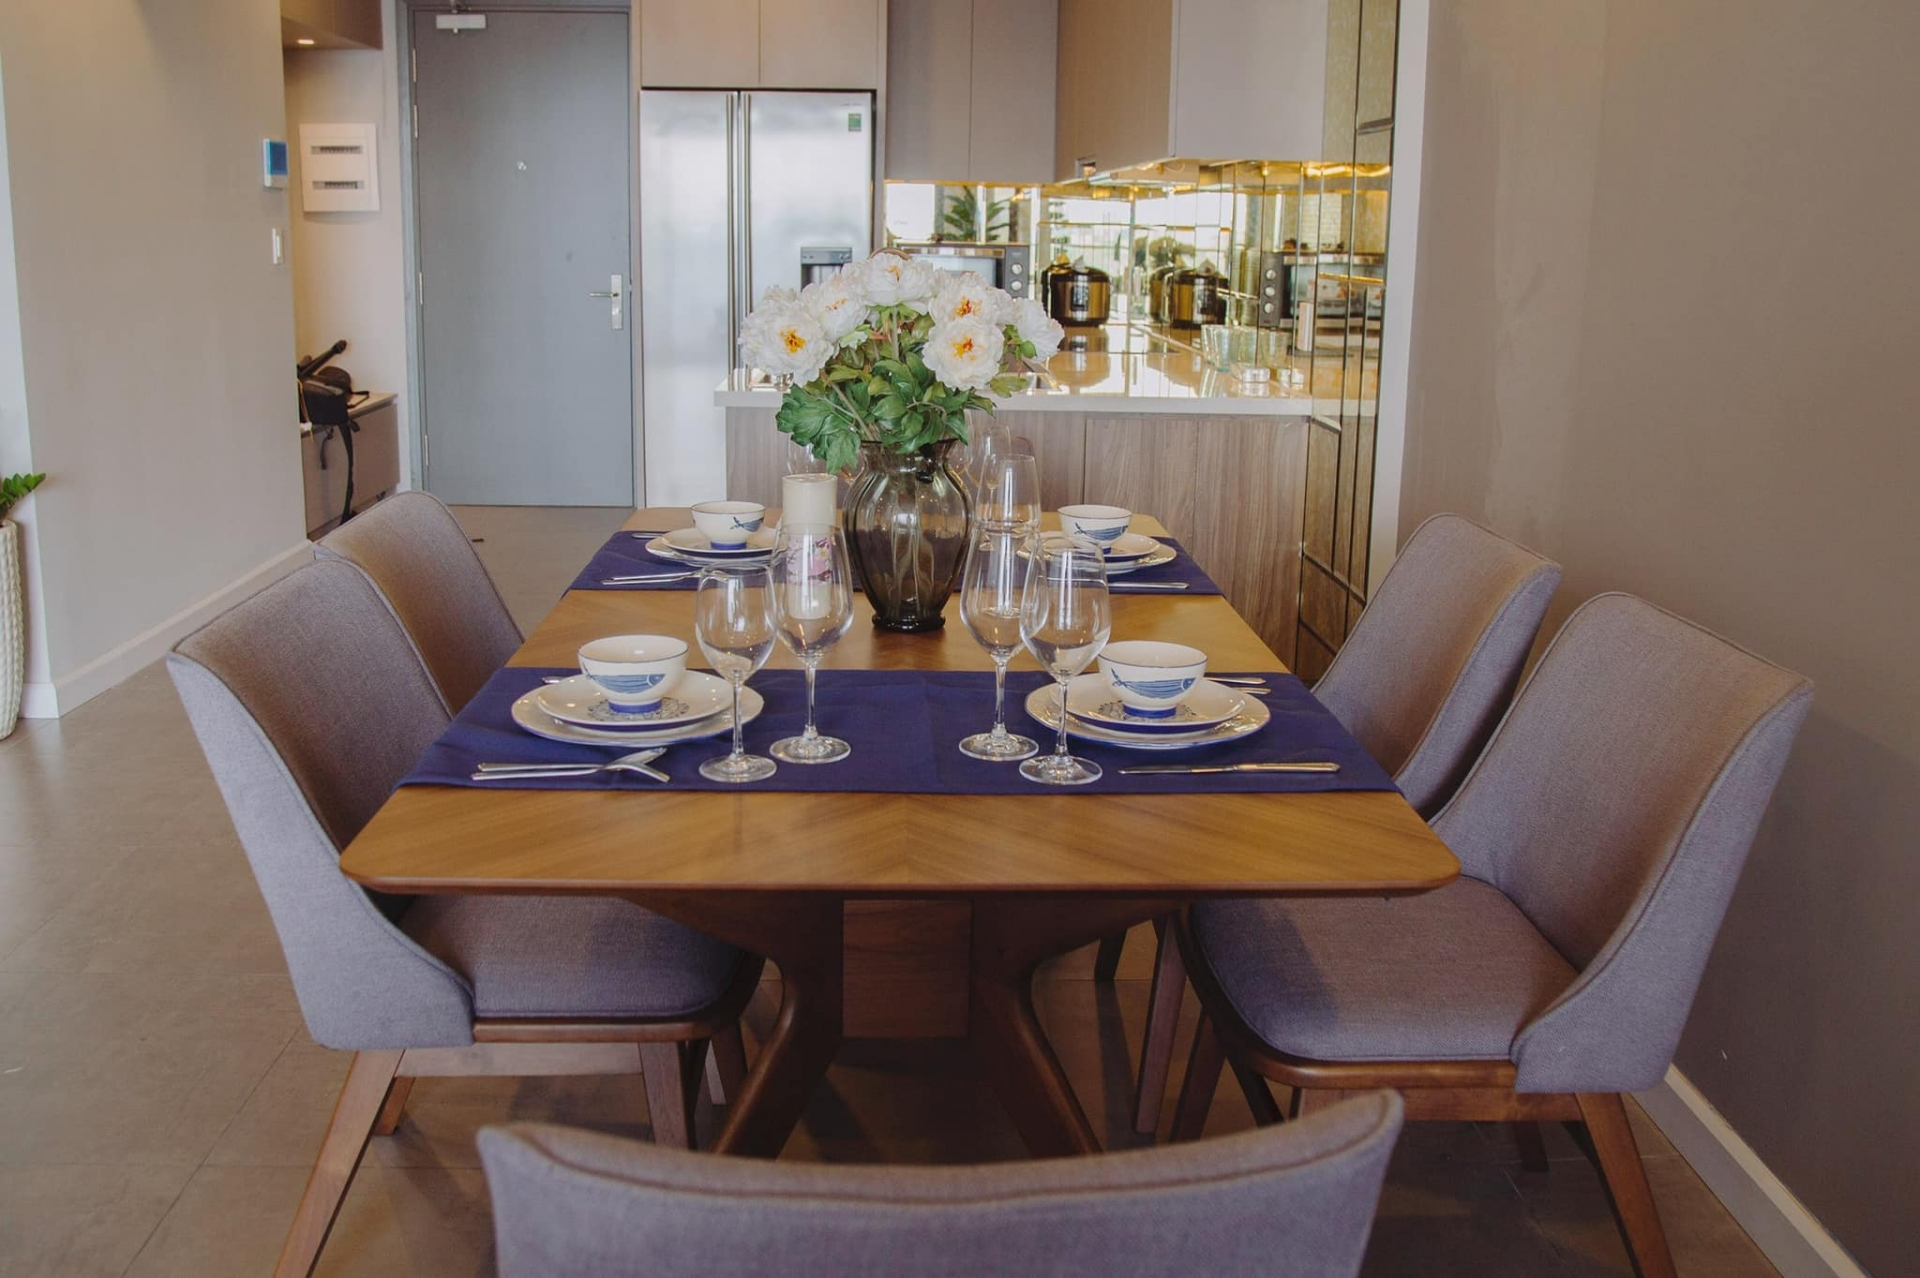 Căn bếp có đầy đủ nội thất hiện đại, bàn ăn gỗ và ghế ngồi sang trọng.